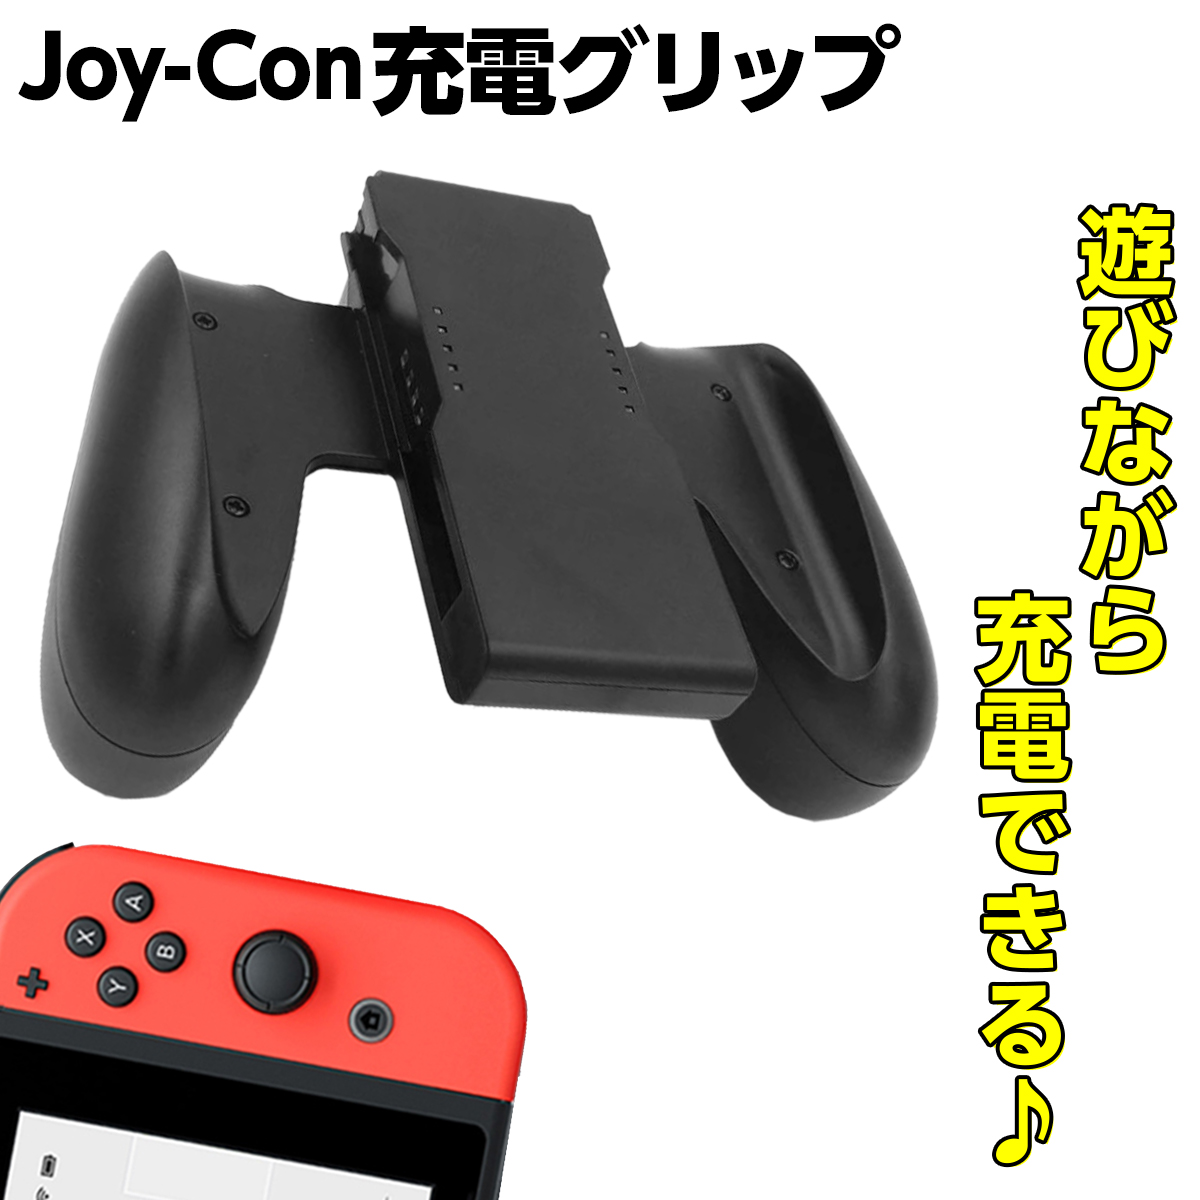 ニンテンドー スイッチ Switch JoyCon 充電グリップ 人気激安 ジョイコングリップ 充電スタンド 充電ハンドル ハンドル 任天堂スイッチ Nintendo ケーブル付き 期間限定特別価格 任天堂スイッチニンテンドースイッチ ジョイコン Joy-Con充電グリップ